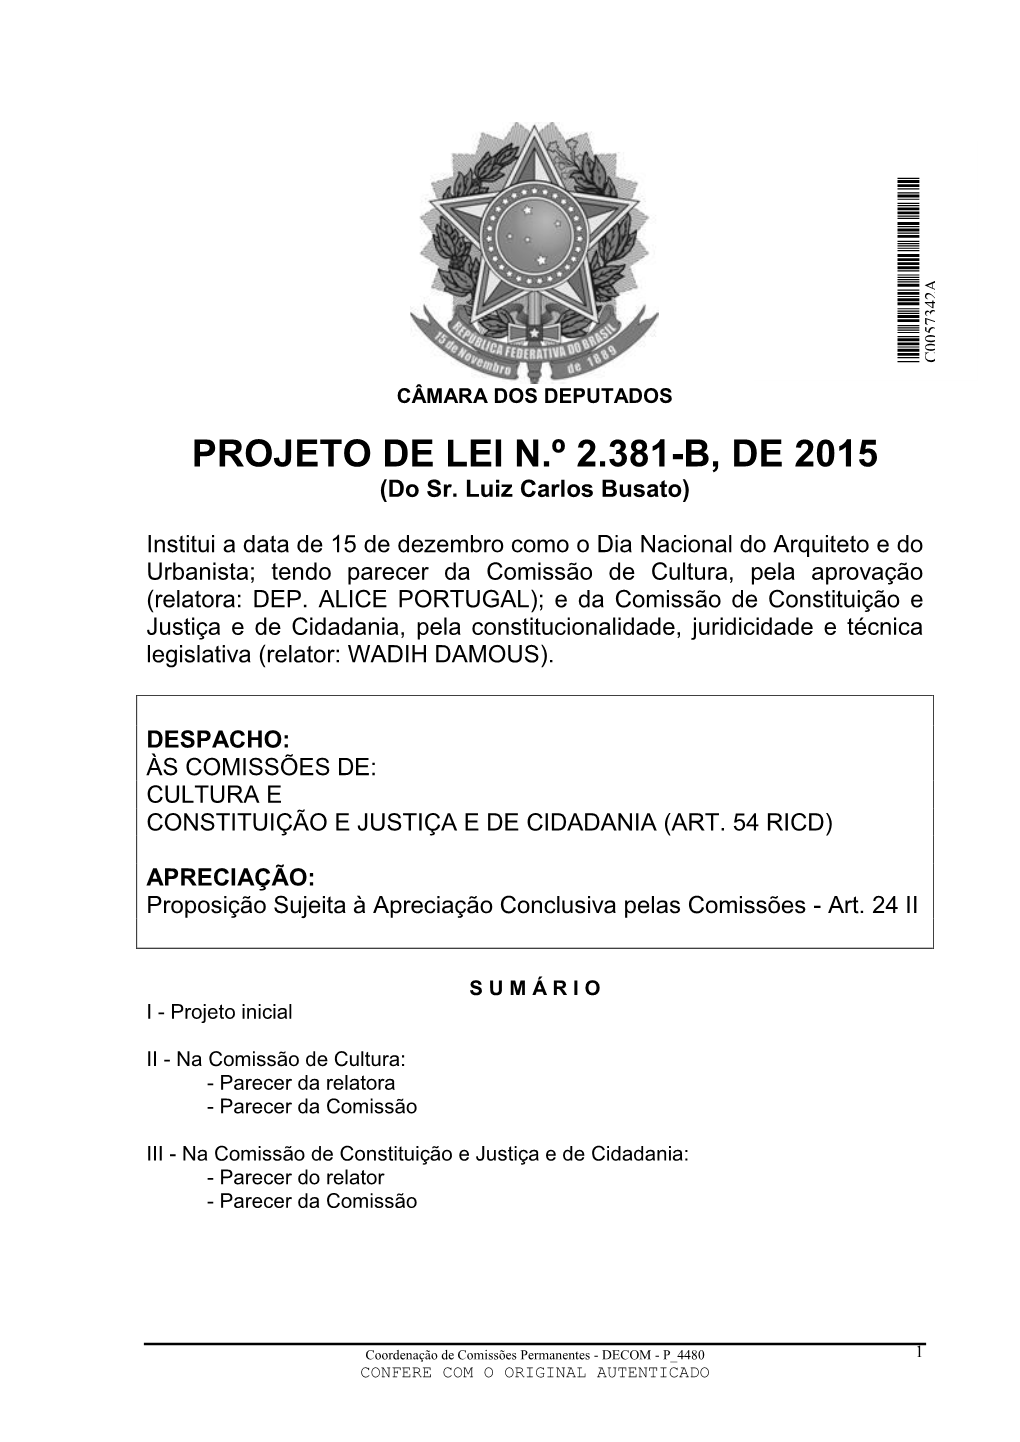 PROJETO DE LEI N.º 2.381-B, DE 2015 (Do Sr